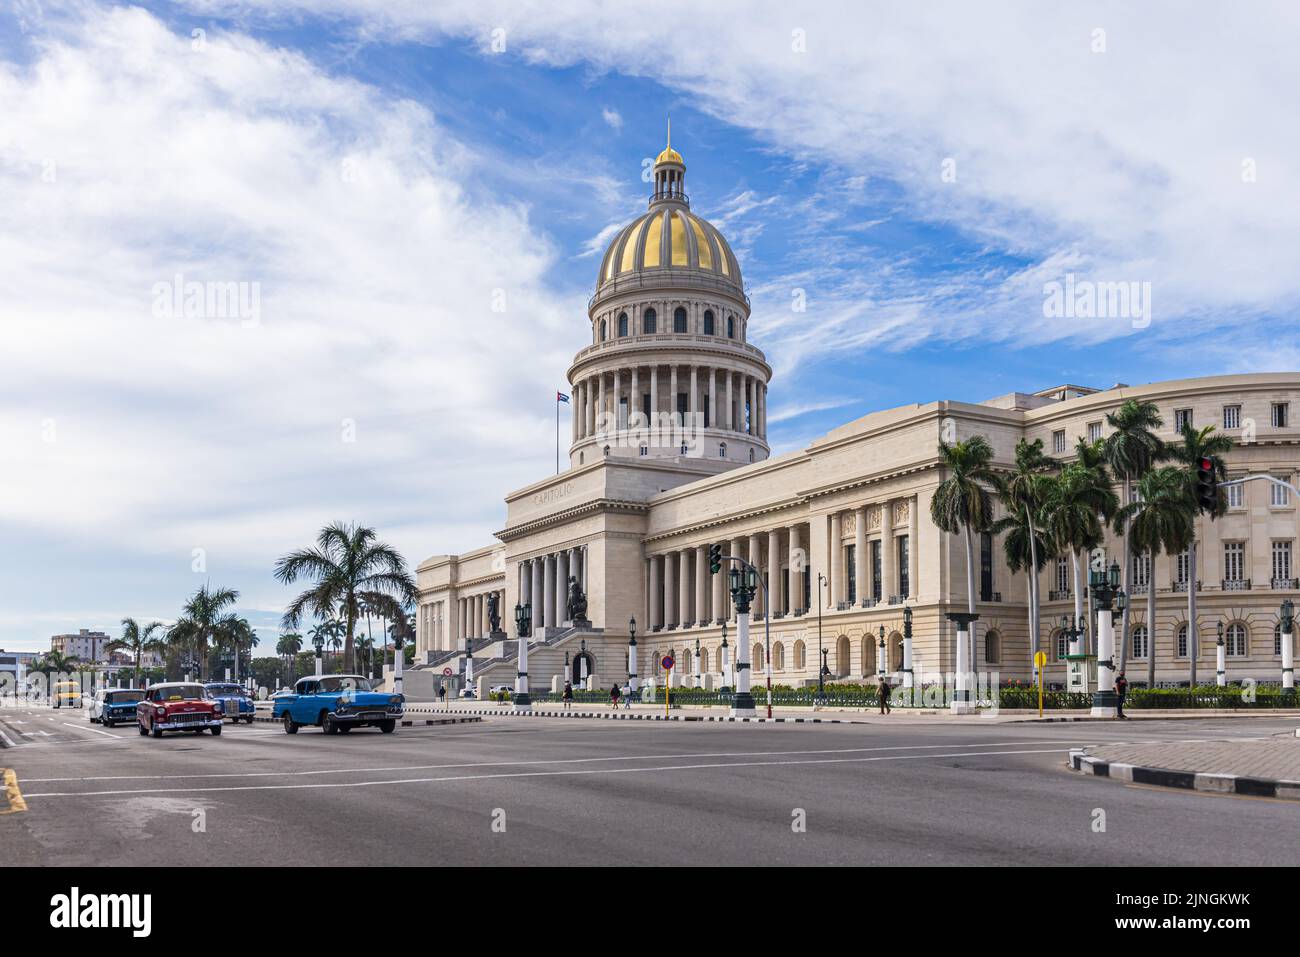 L'AVANA, CUBA - 11 GENNAIO 2021 : scena di strada con auto classiche convertibili e il famoso Campidoglio dell'Avana Foto Stock